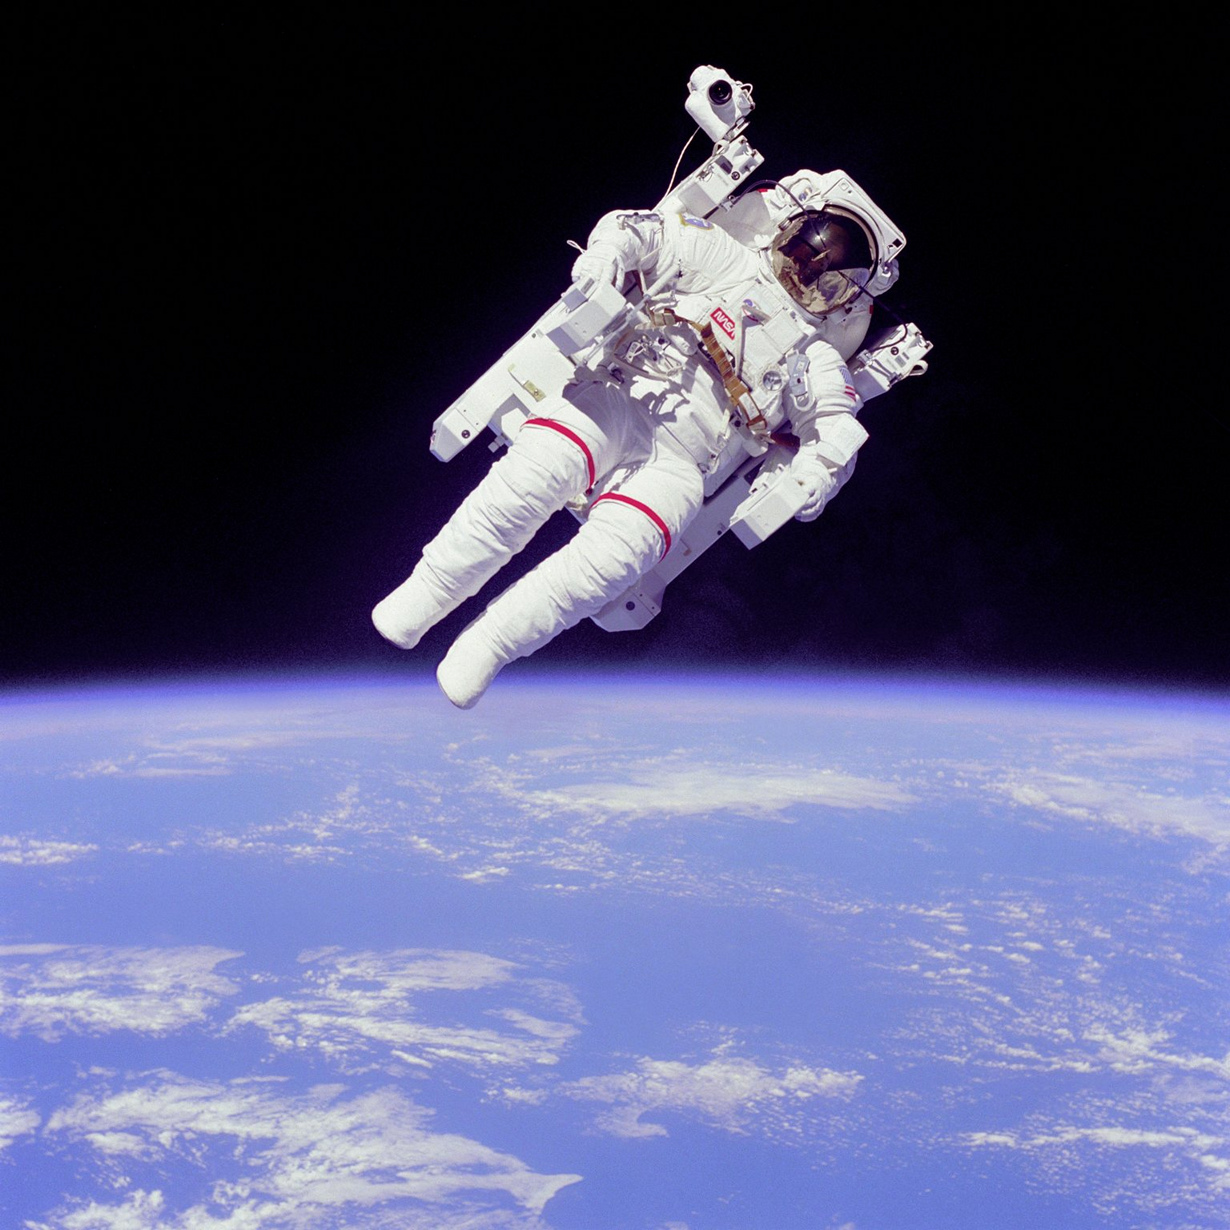 Астронавт НАСА Брюс Маккэндлесс II совершает выход в открытый космос с использованием установки для перемещения и маневрирования. Система УПМК даёт возможность космонавту перемещаться в невесомости вне космического корабля. (NASA on The Commons)